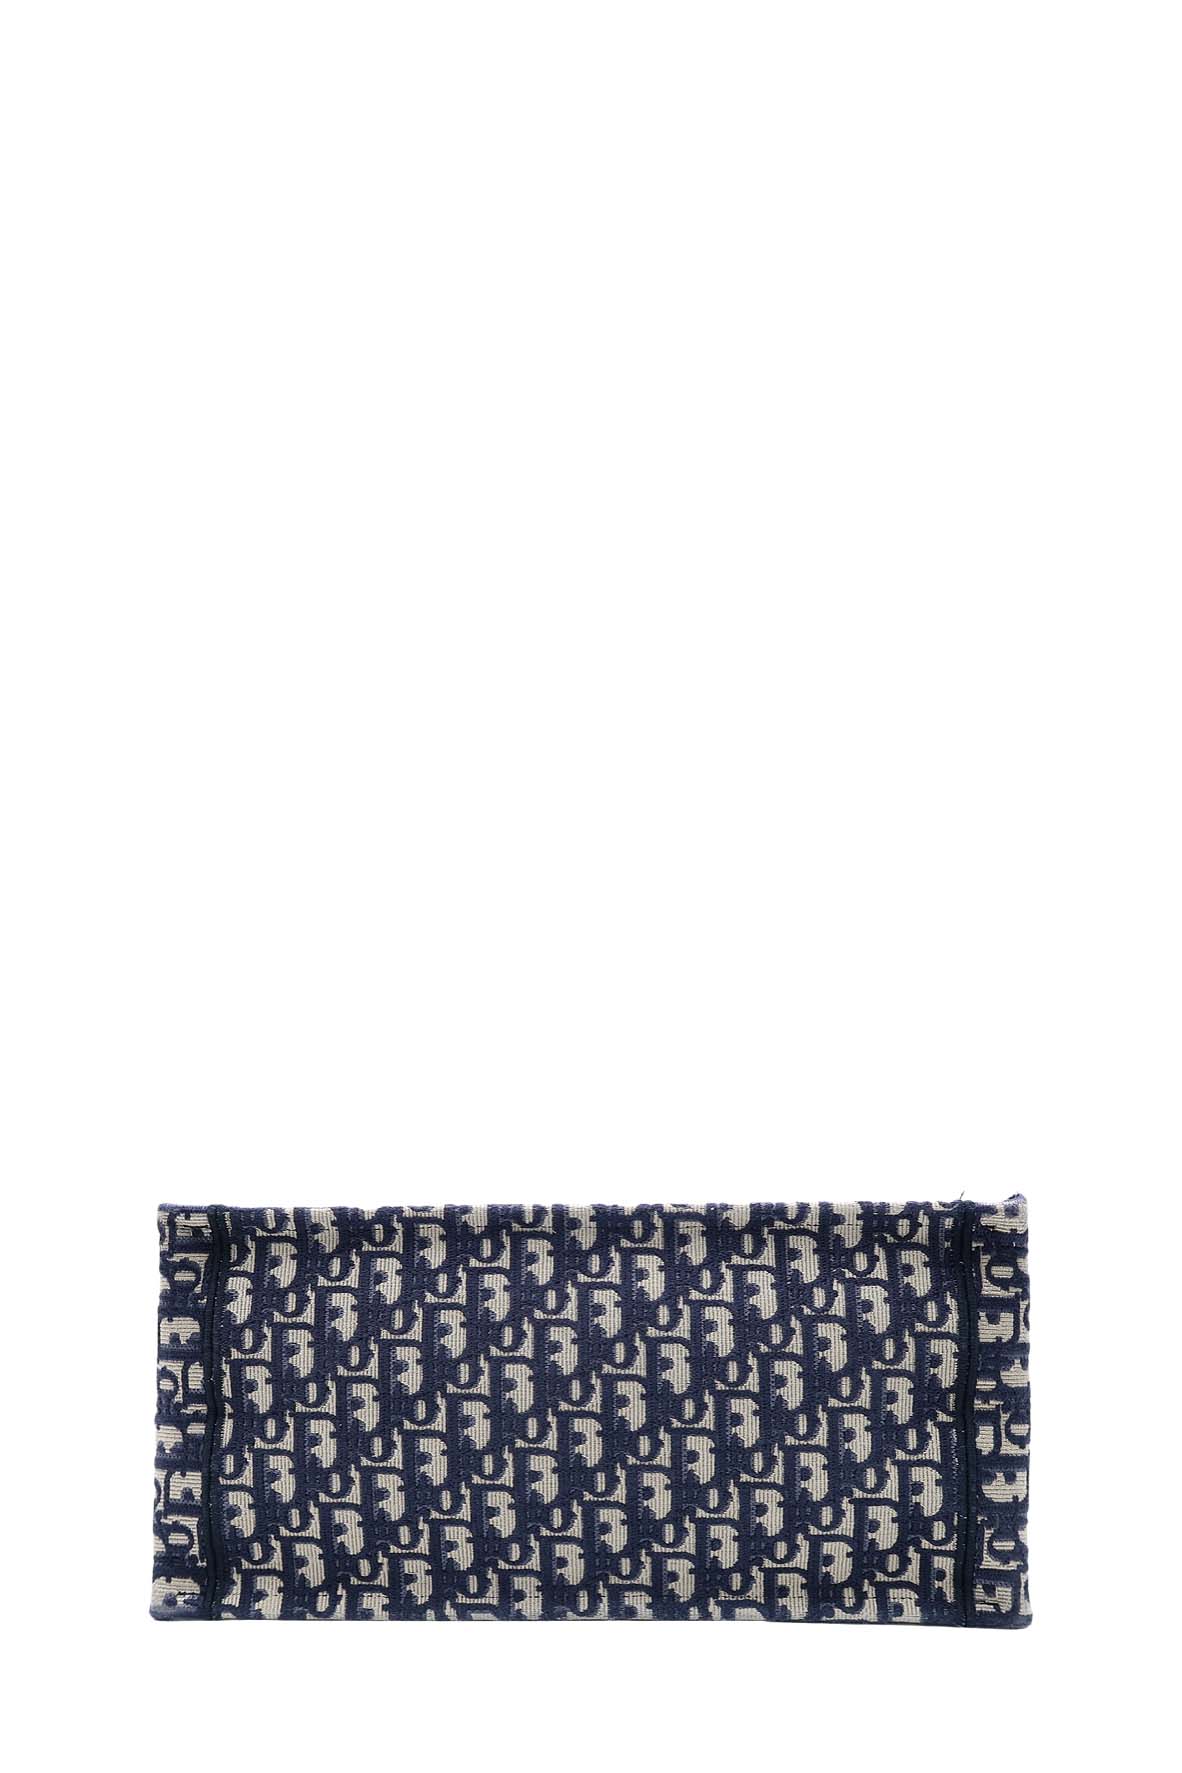 Dior Small Book Tote Navy Oblique – DAC